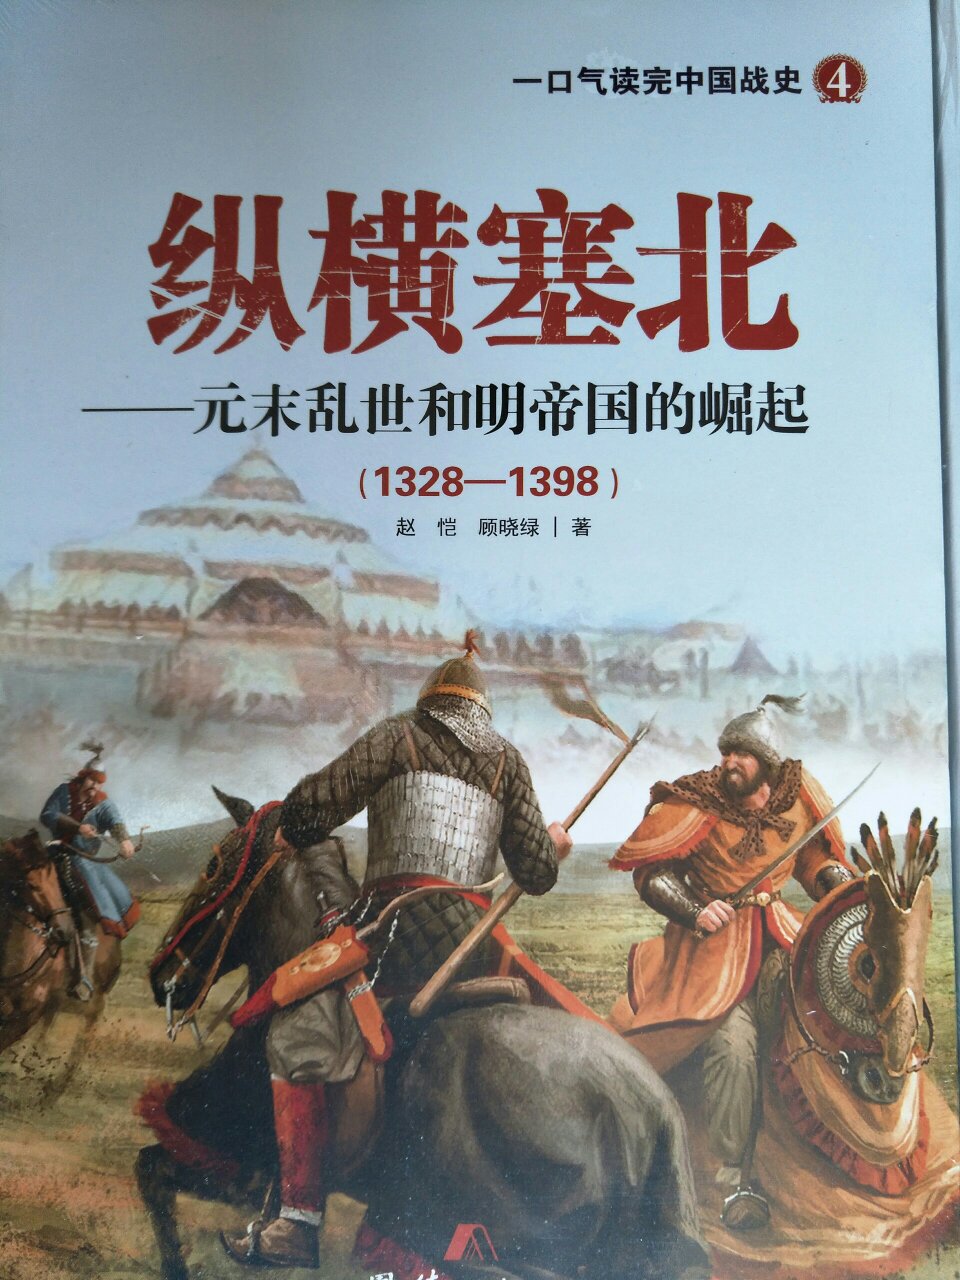 套书果断入手，一口气读完中国战史，纵横塞北是其中的一本，购物体验满意，点赞。